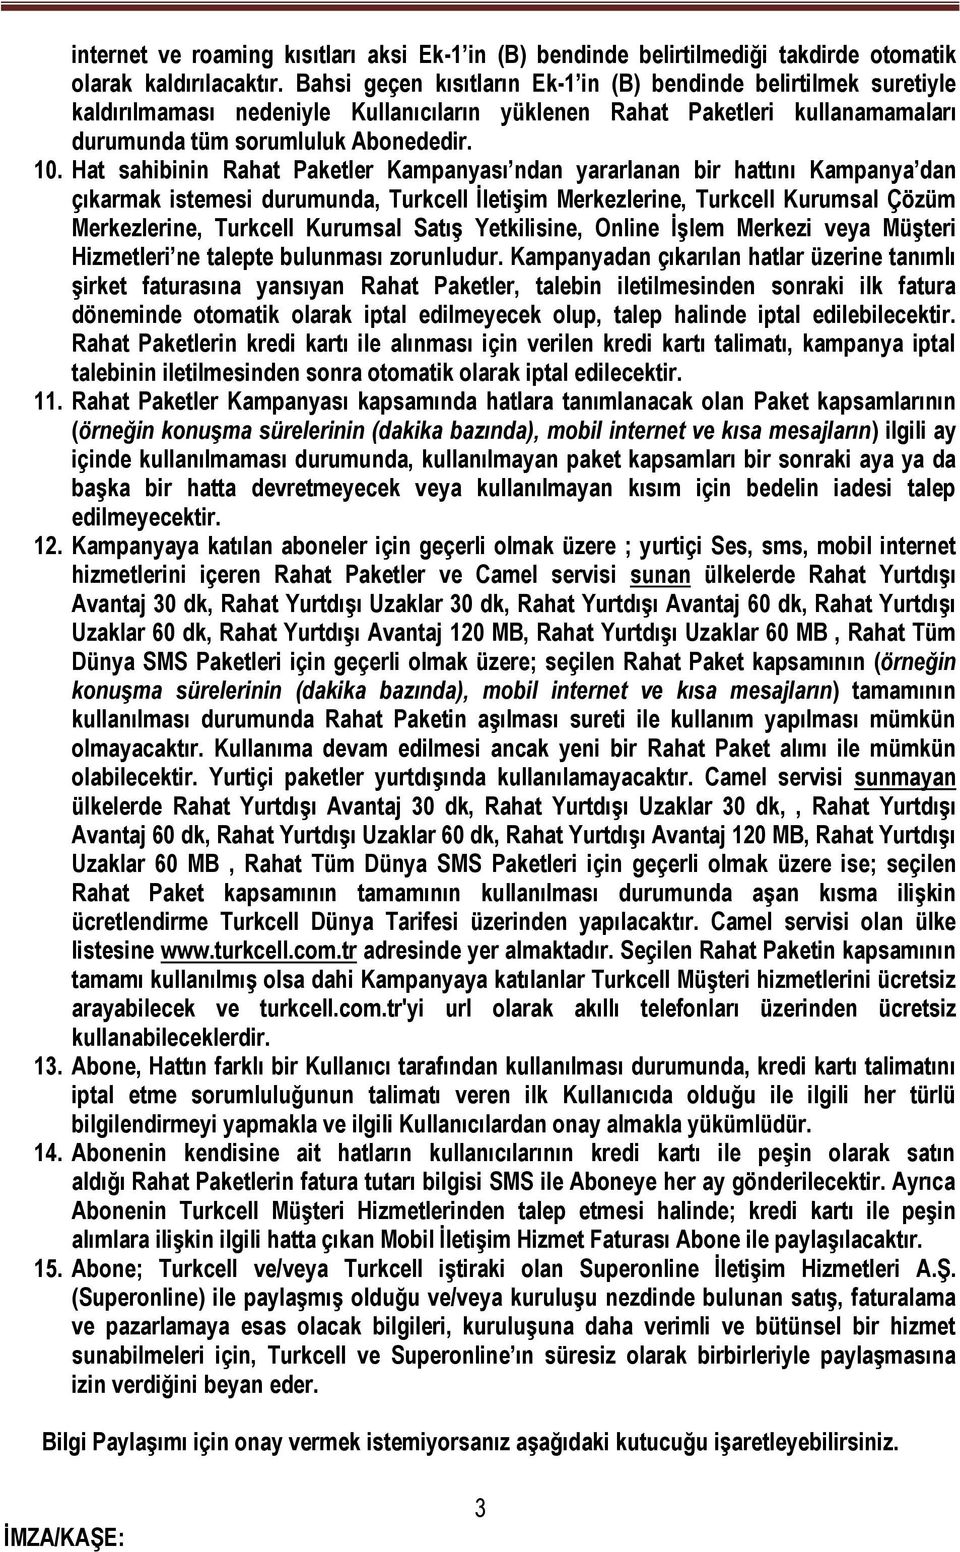 Hat sahibinin Rahat Paketler Kampanyası ndan yararlanan bir hattını Kampanya dan çıkarmak istemesi durumunda, Turkcell İletişim Merkezlerine, Turkcell Kurumsal Çözüm Merkezlerine, Turkcell Kurumsal